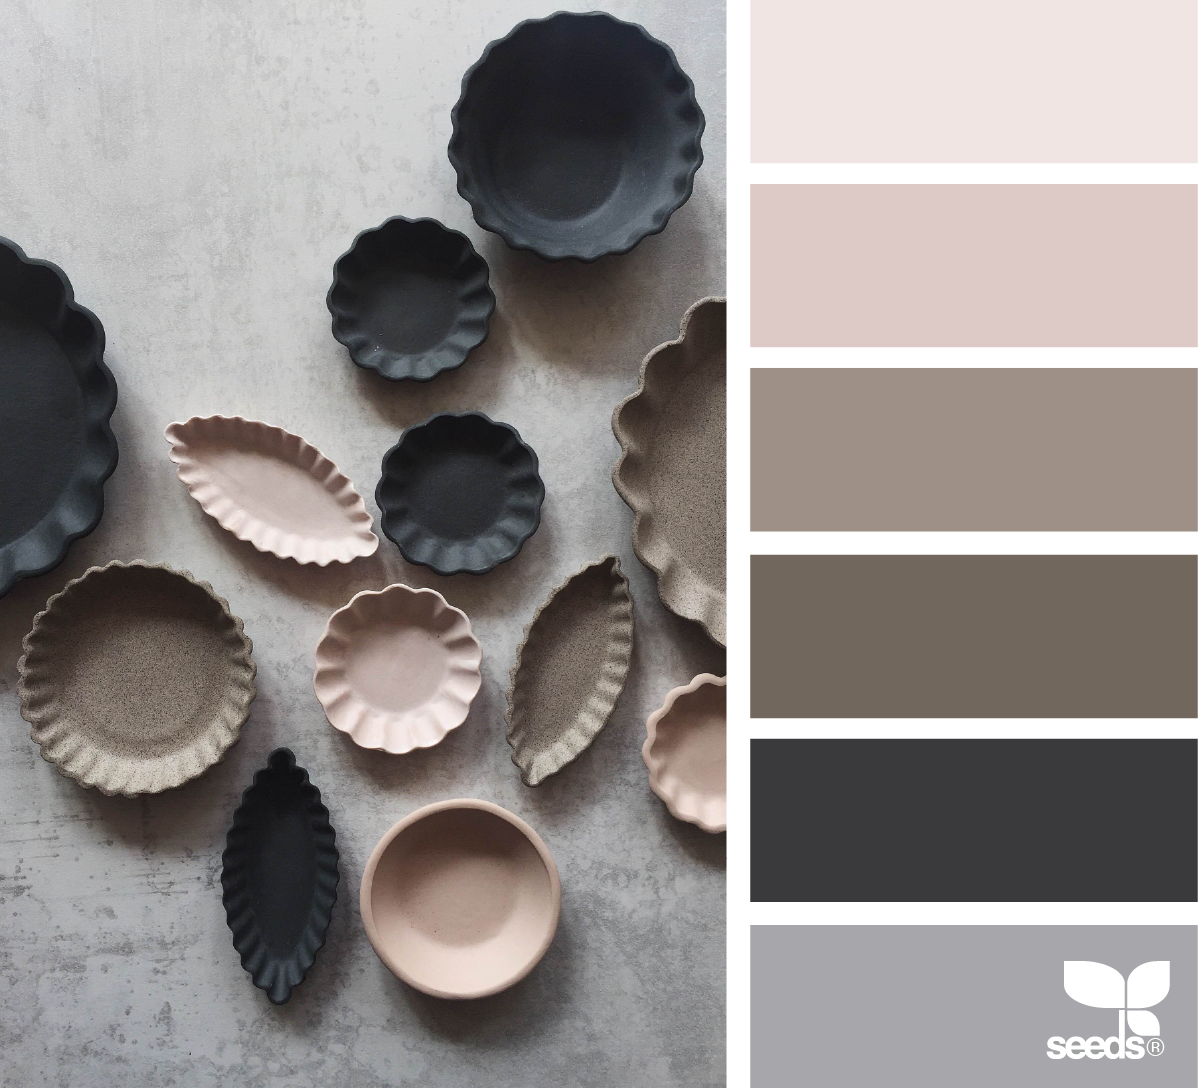 Idee Palette Élégant Designseeds Seedscolor Palette Ceramic Color Seeds